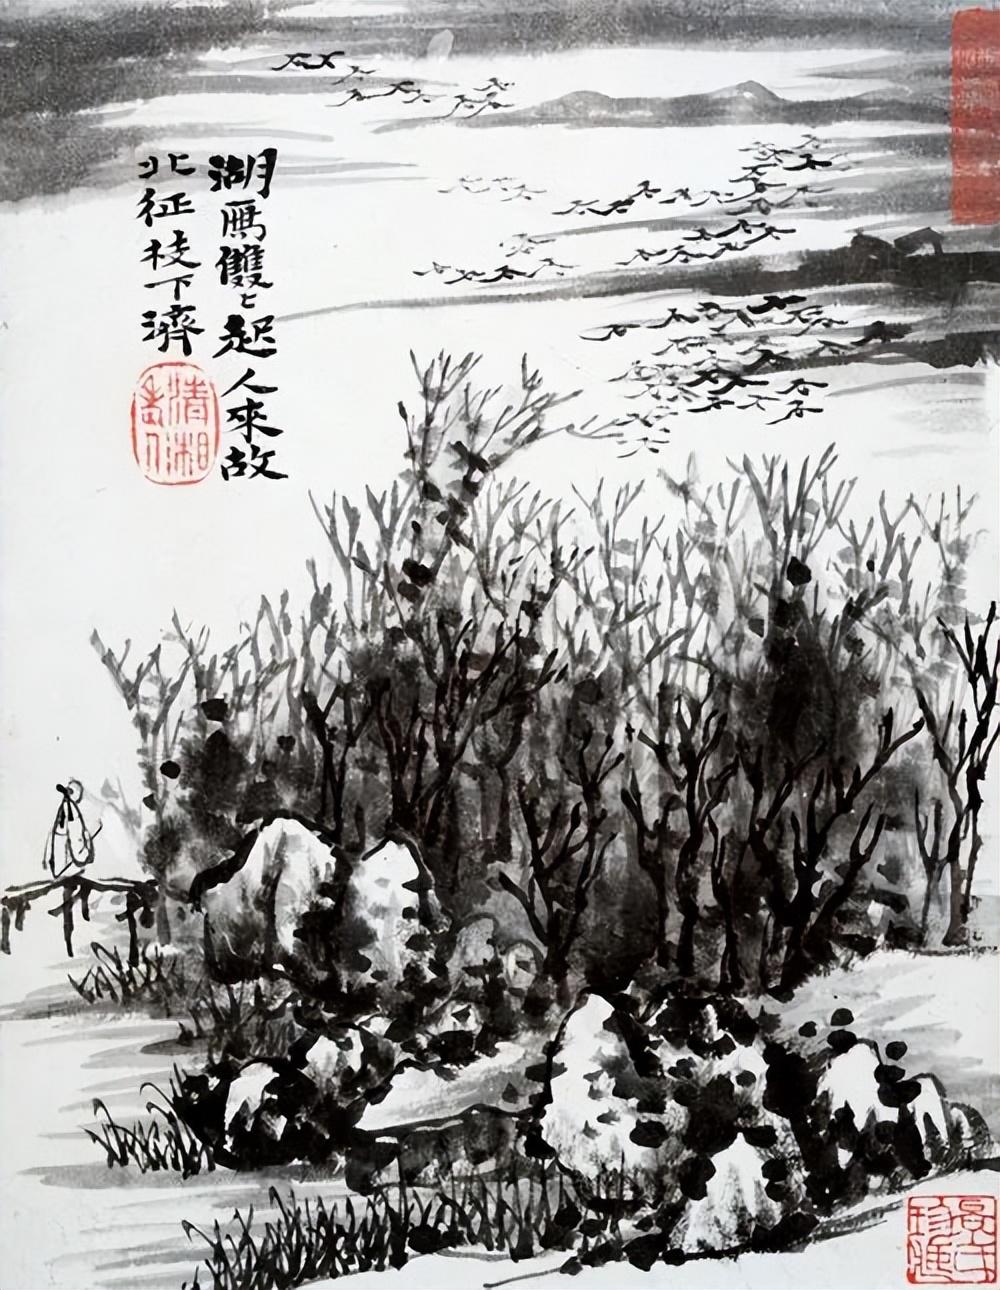 六幅清代画家石涛山水画作品高清图片欣赏